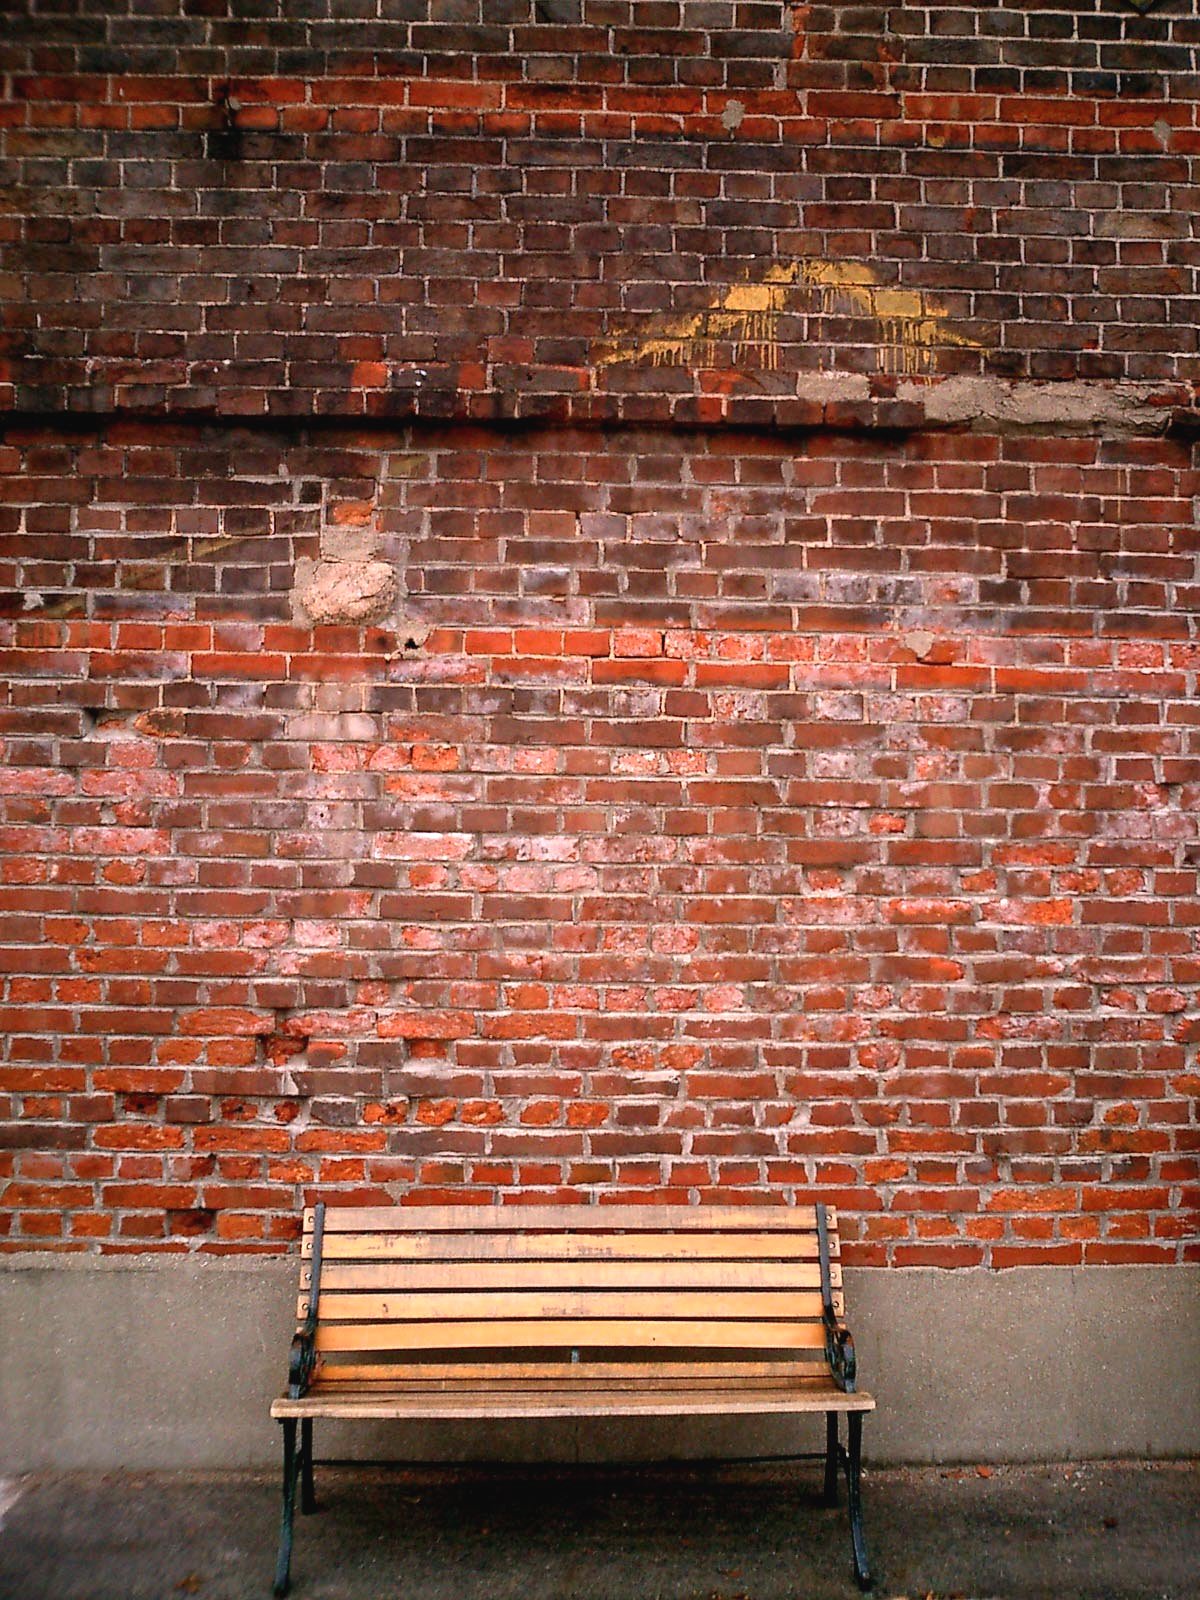 Bench and brick wall wallpaper photo hd download